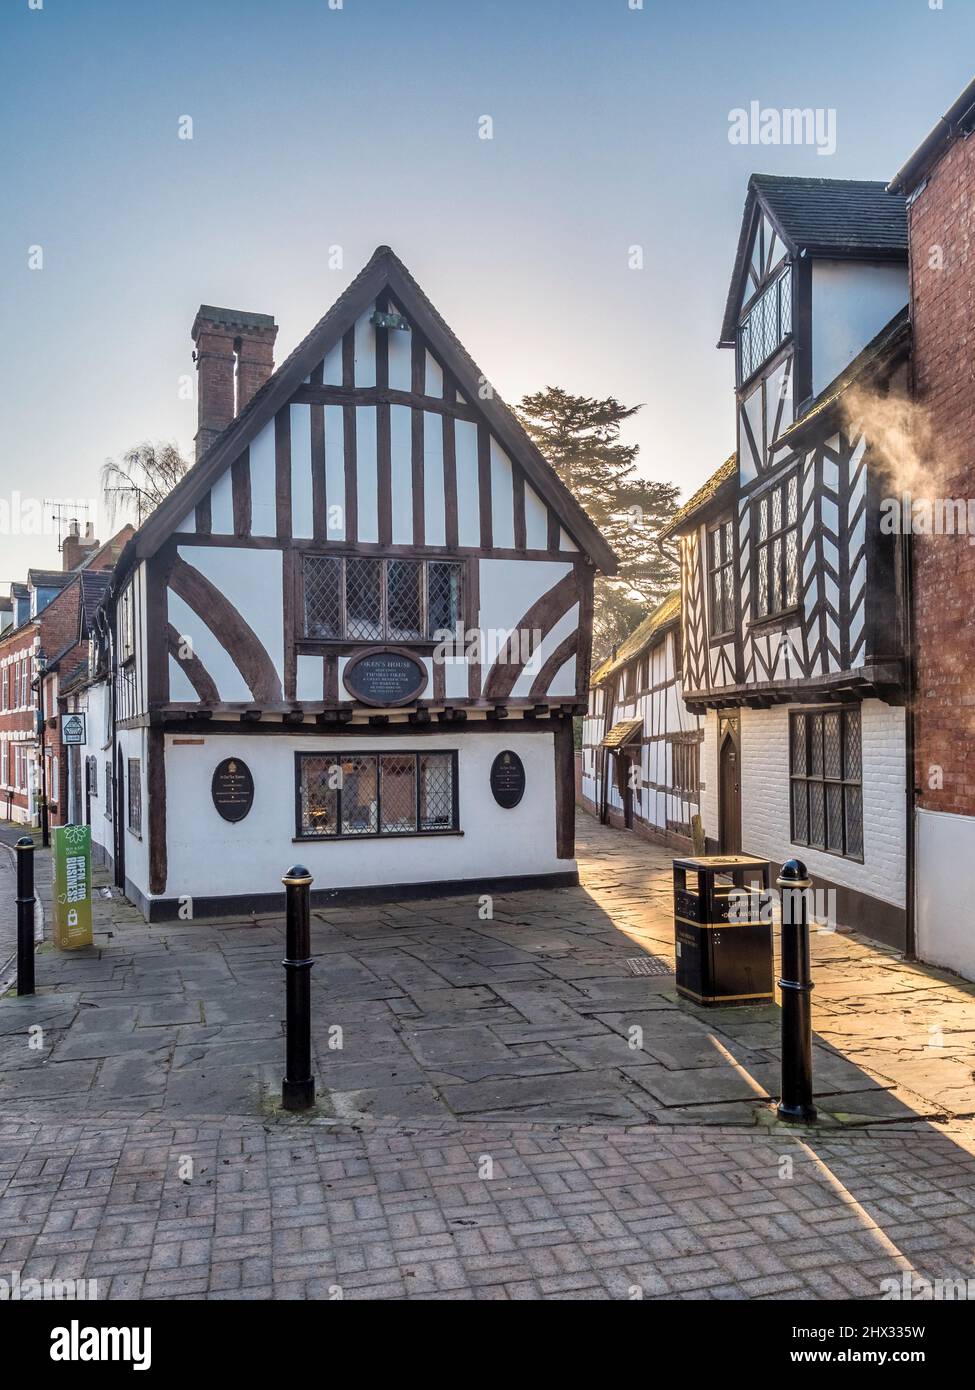 17 janvier 2022: Warwick, Royaume-Uni - Oken's House, Warwick, Royaume-Uni - magnifique bâtiment Tudor dans la ville de Warwick, Angleterre. Banque D'Images